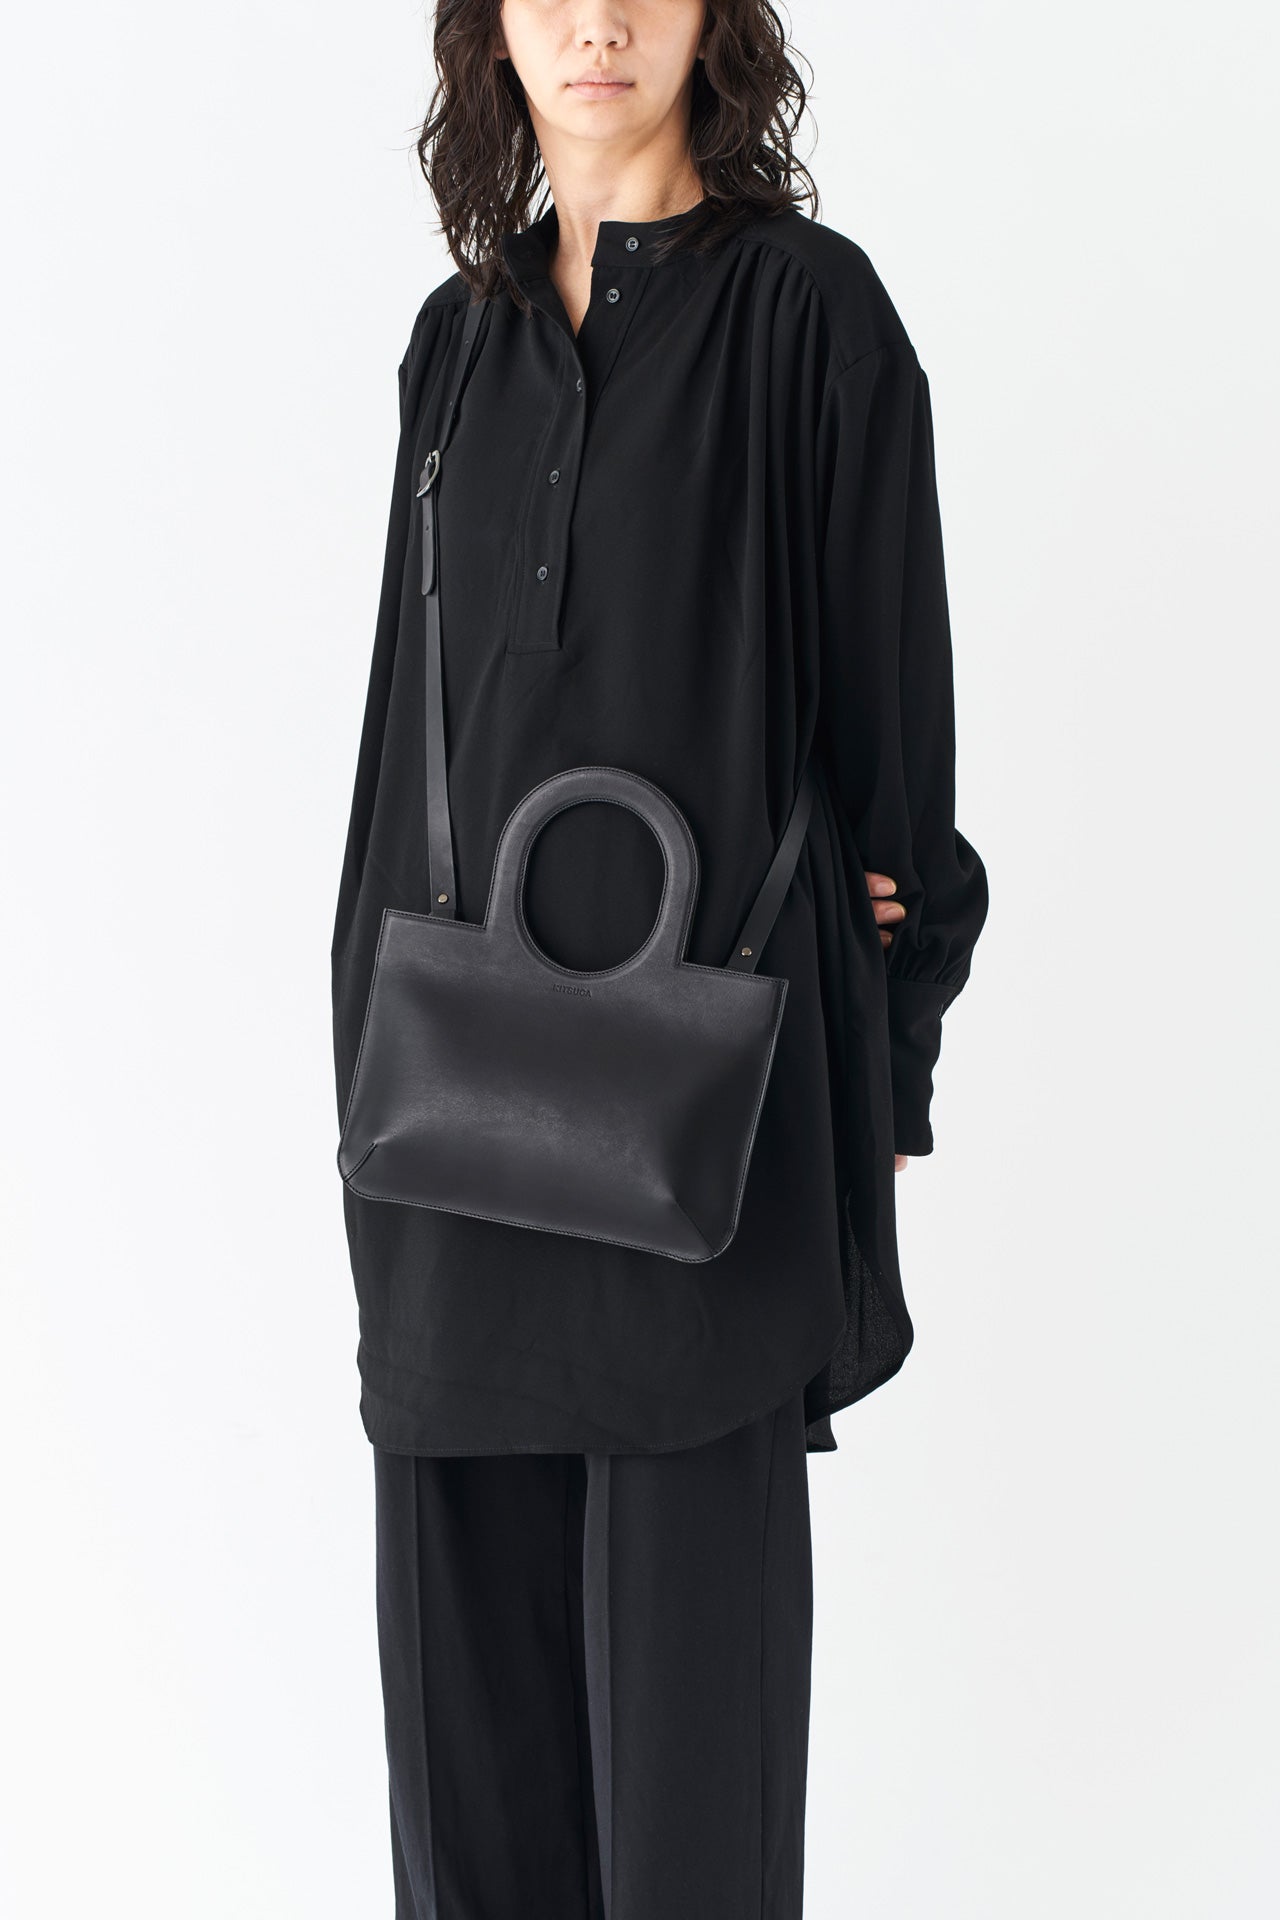 シンプルなレザーのショルダーハンドバッグとモードスタイルの女性